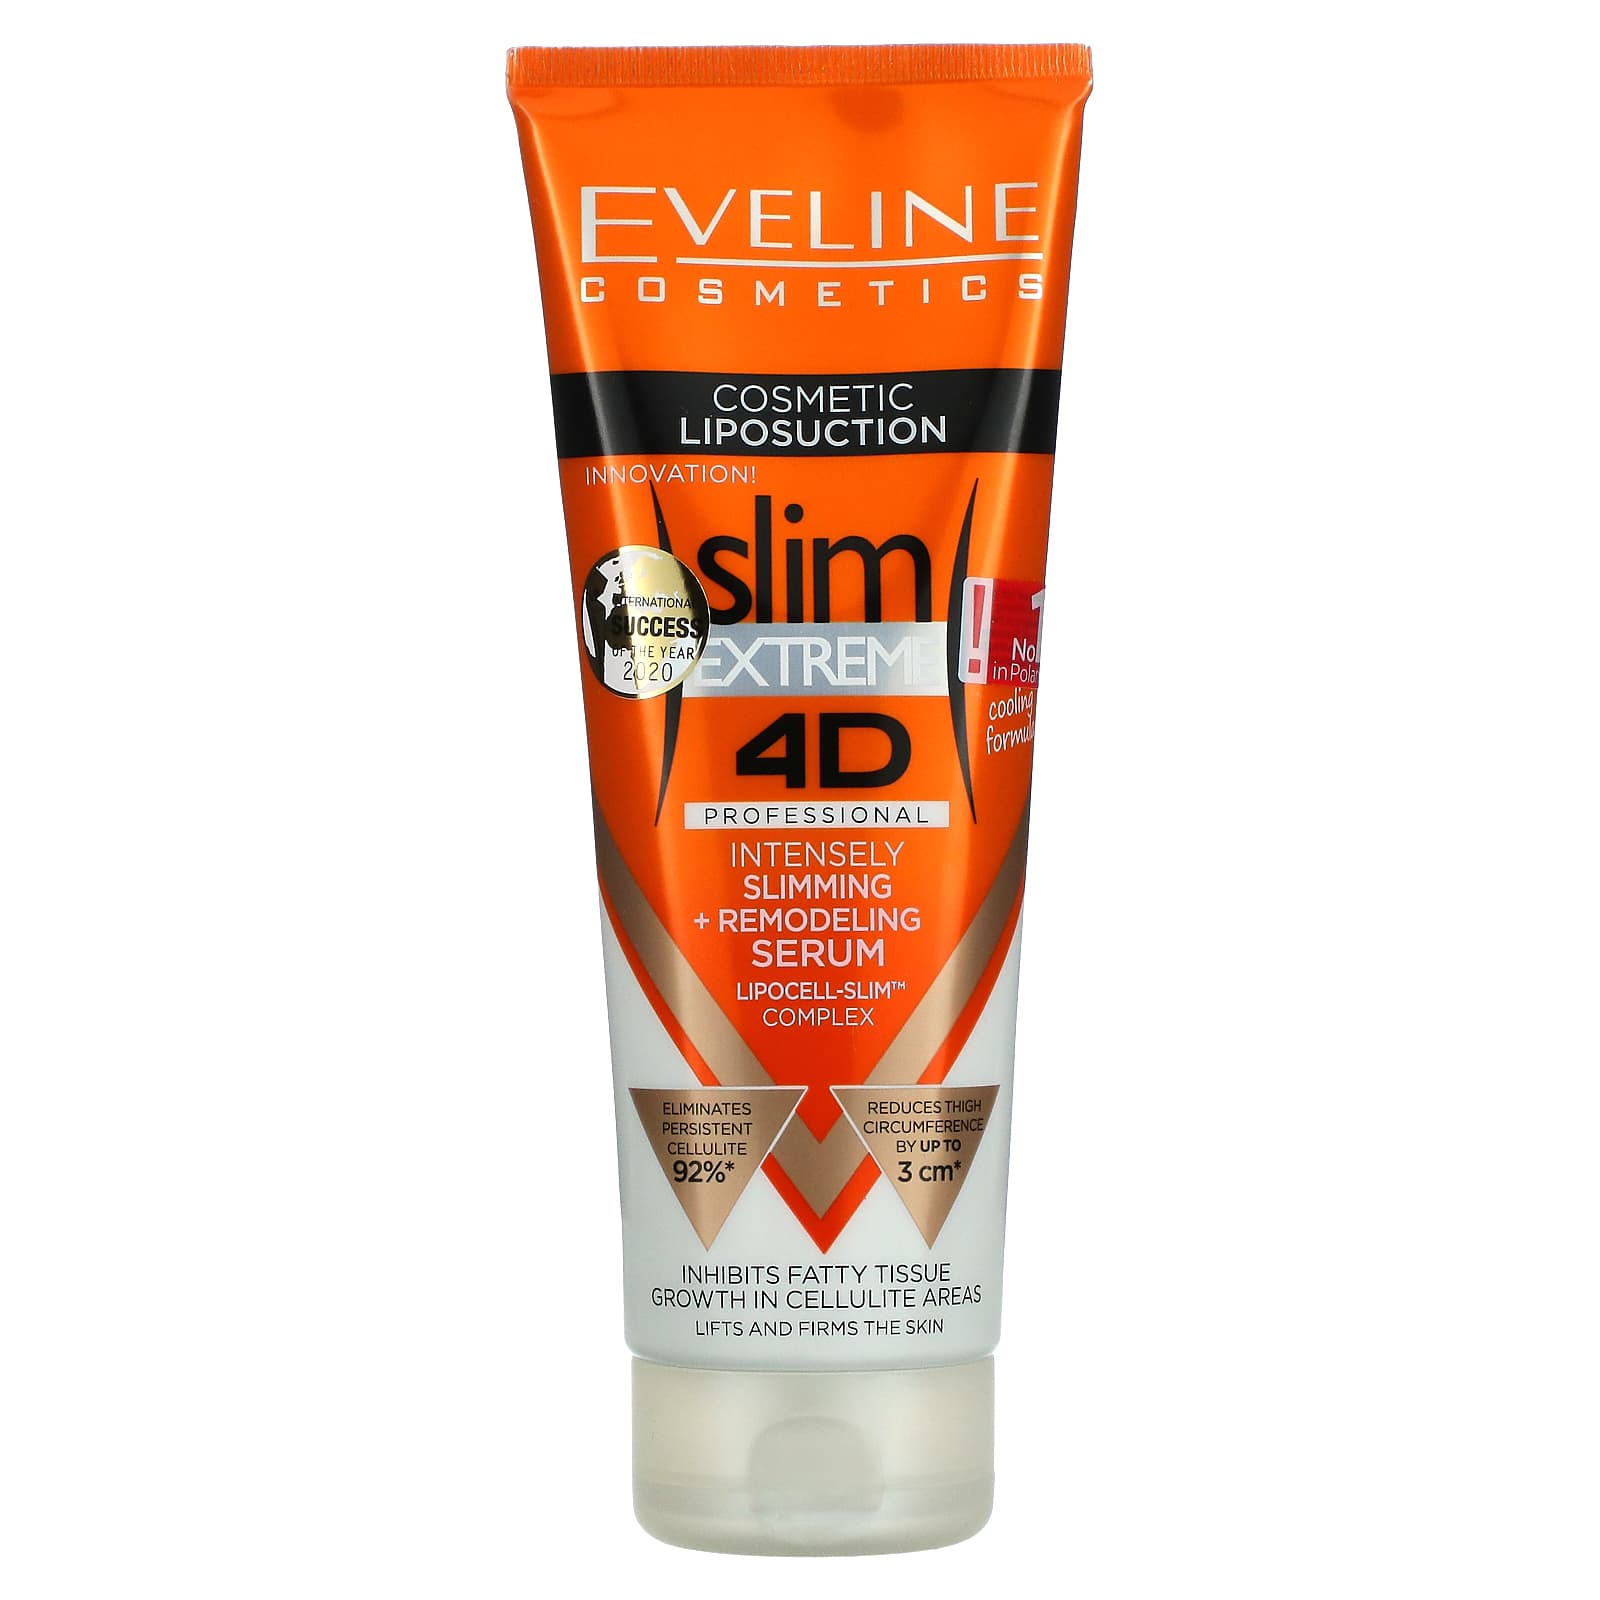 Сыворотка Eveline Cosmetics для интенсивного восстановления и ремоделирования, 250 мл хедера хеликс микс